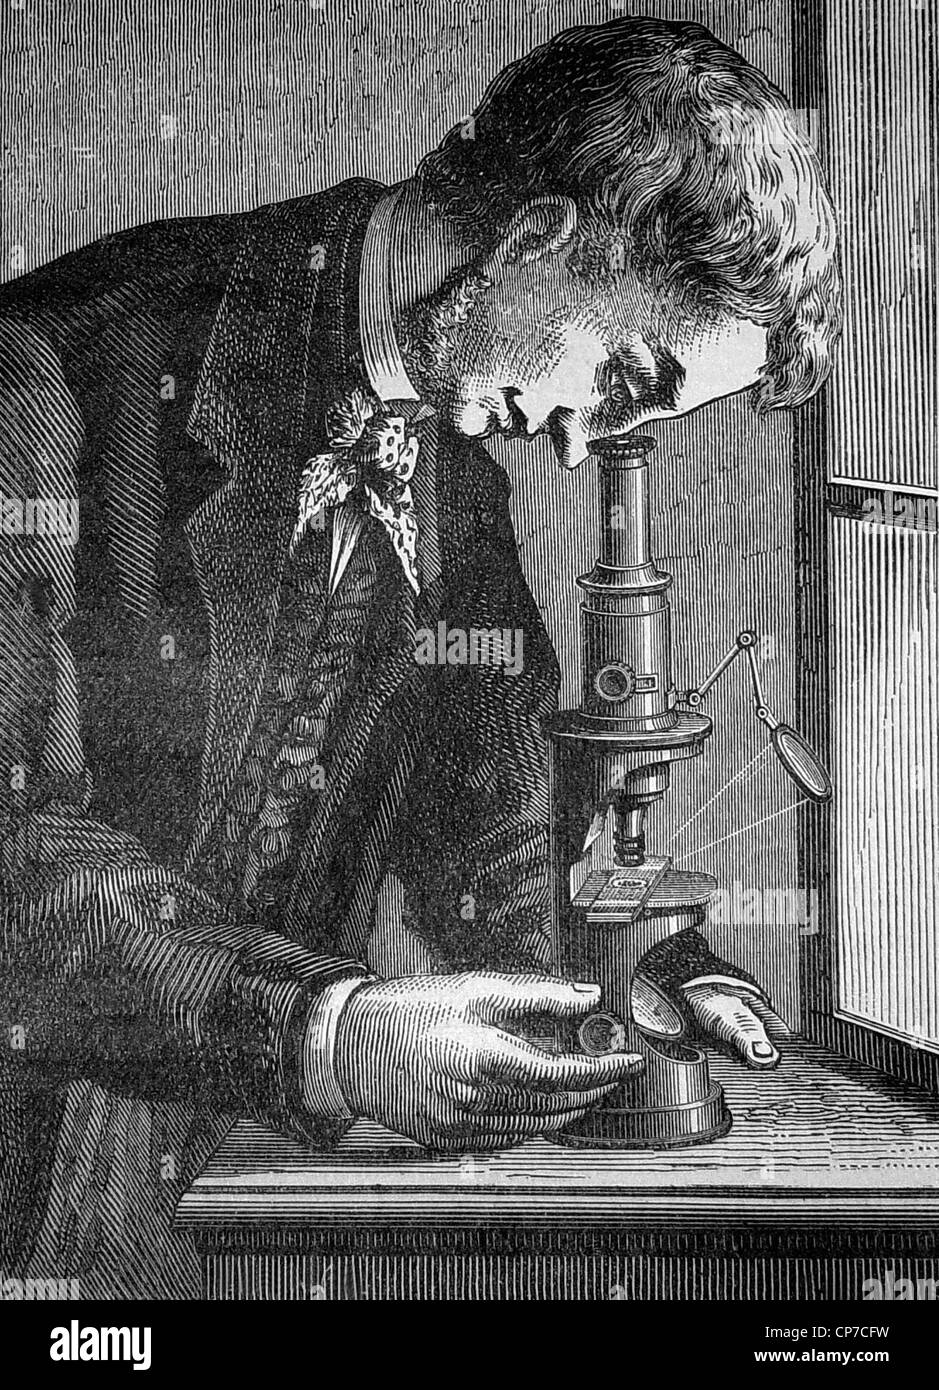 Halben Körper Porträt des viktorianischen Wissenschaftlers Blick durch das Mikroskop, vom Holz graviert 1882, von Montaner y Simon habe ich veröffentlicht Stockfoto